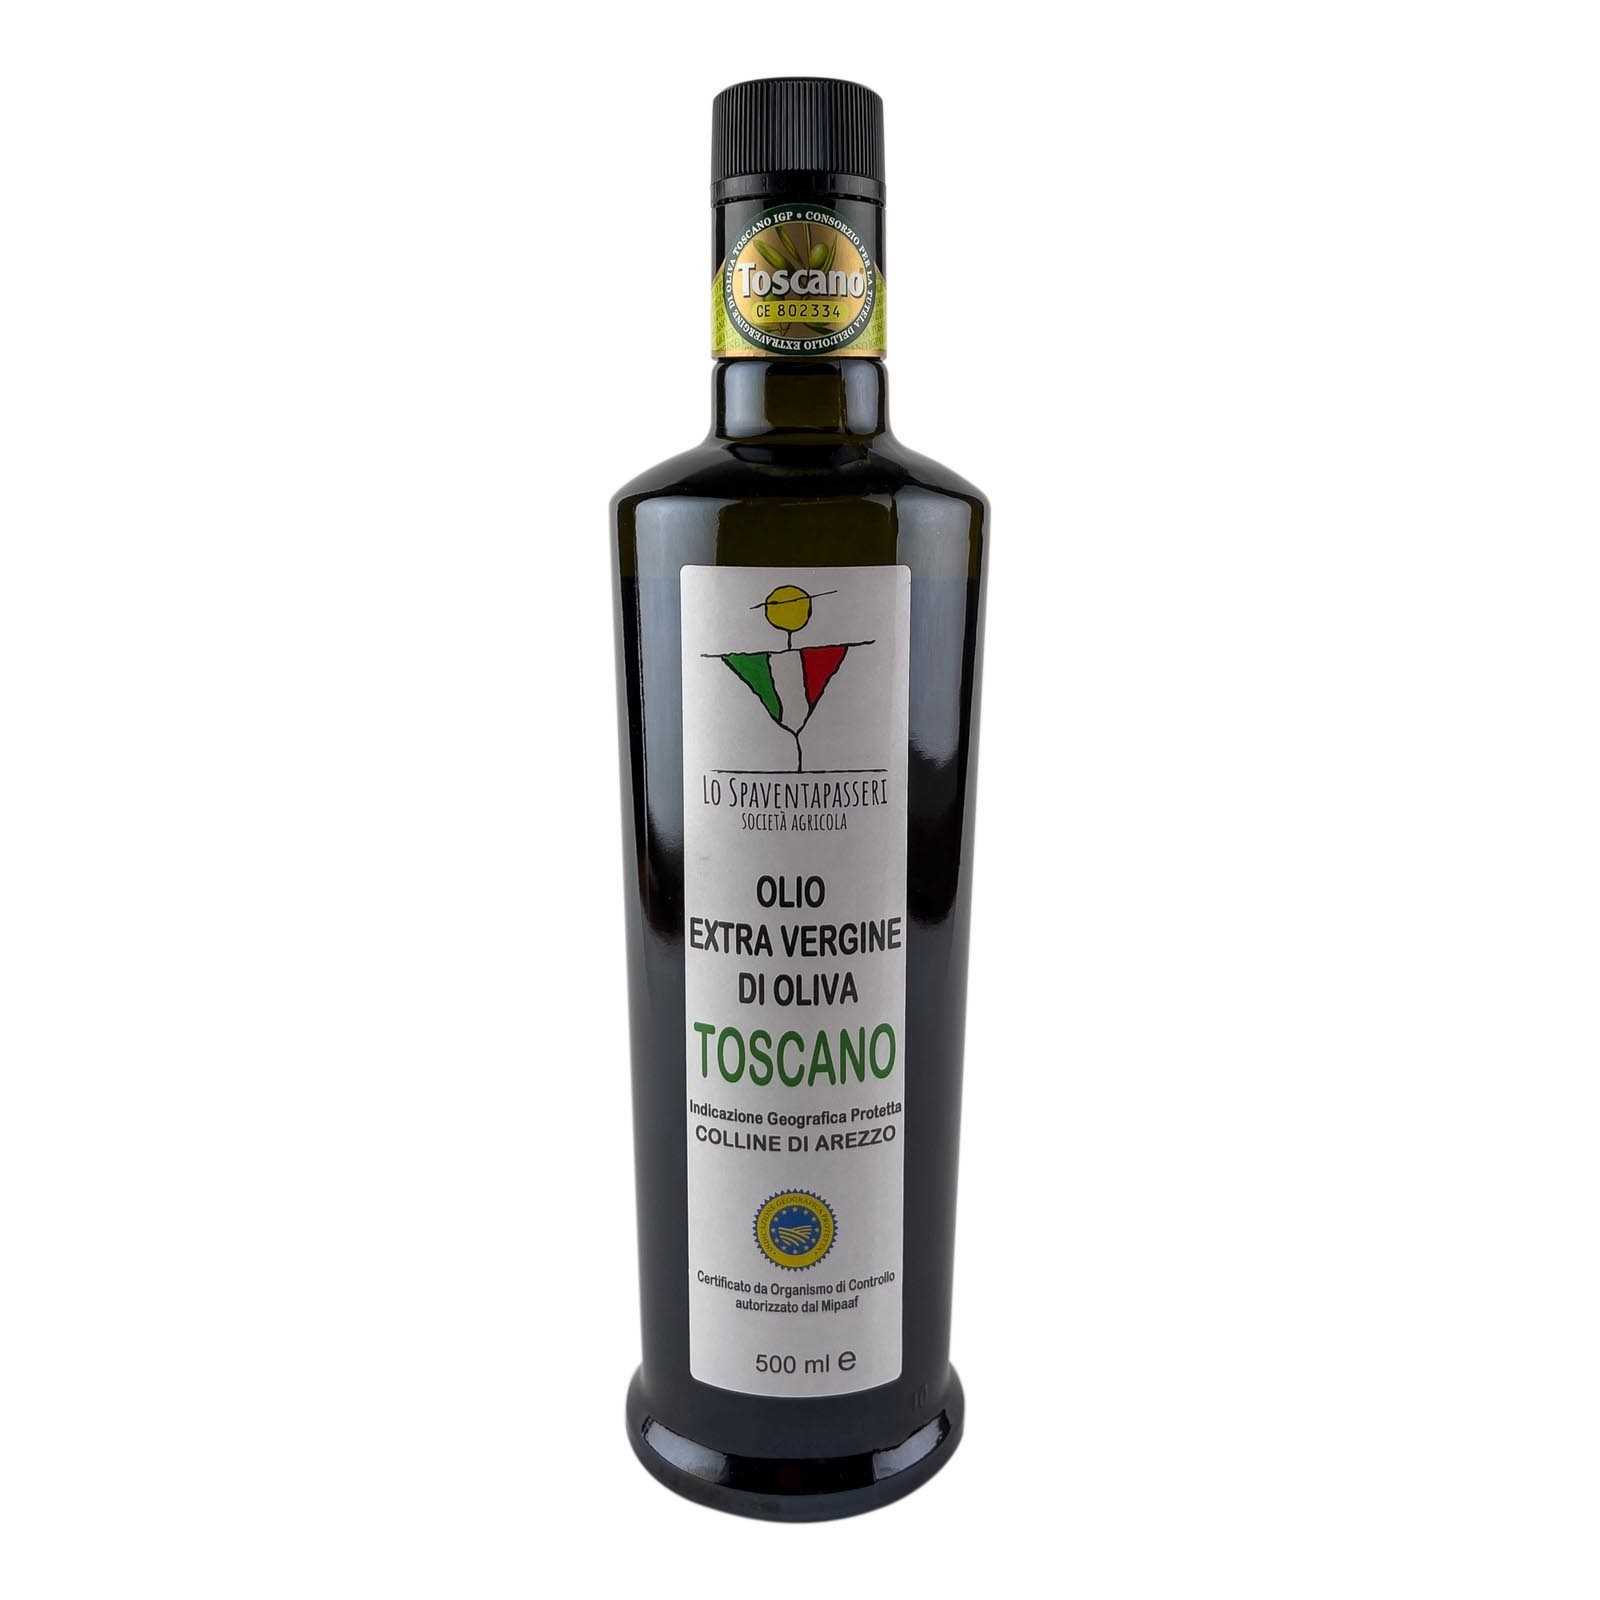 „Lo Spaventapasseri”, toskanisches Olivenöl extra vergine, handgefertigt, mit Kaltextraktionsverfahren, aus Oliven von Hügeln in der Nähe von Arezzo - Produktionsjahr 2020/2021.